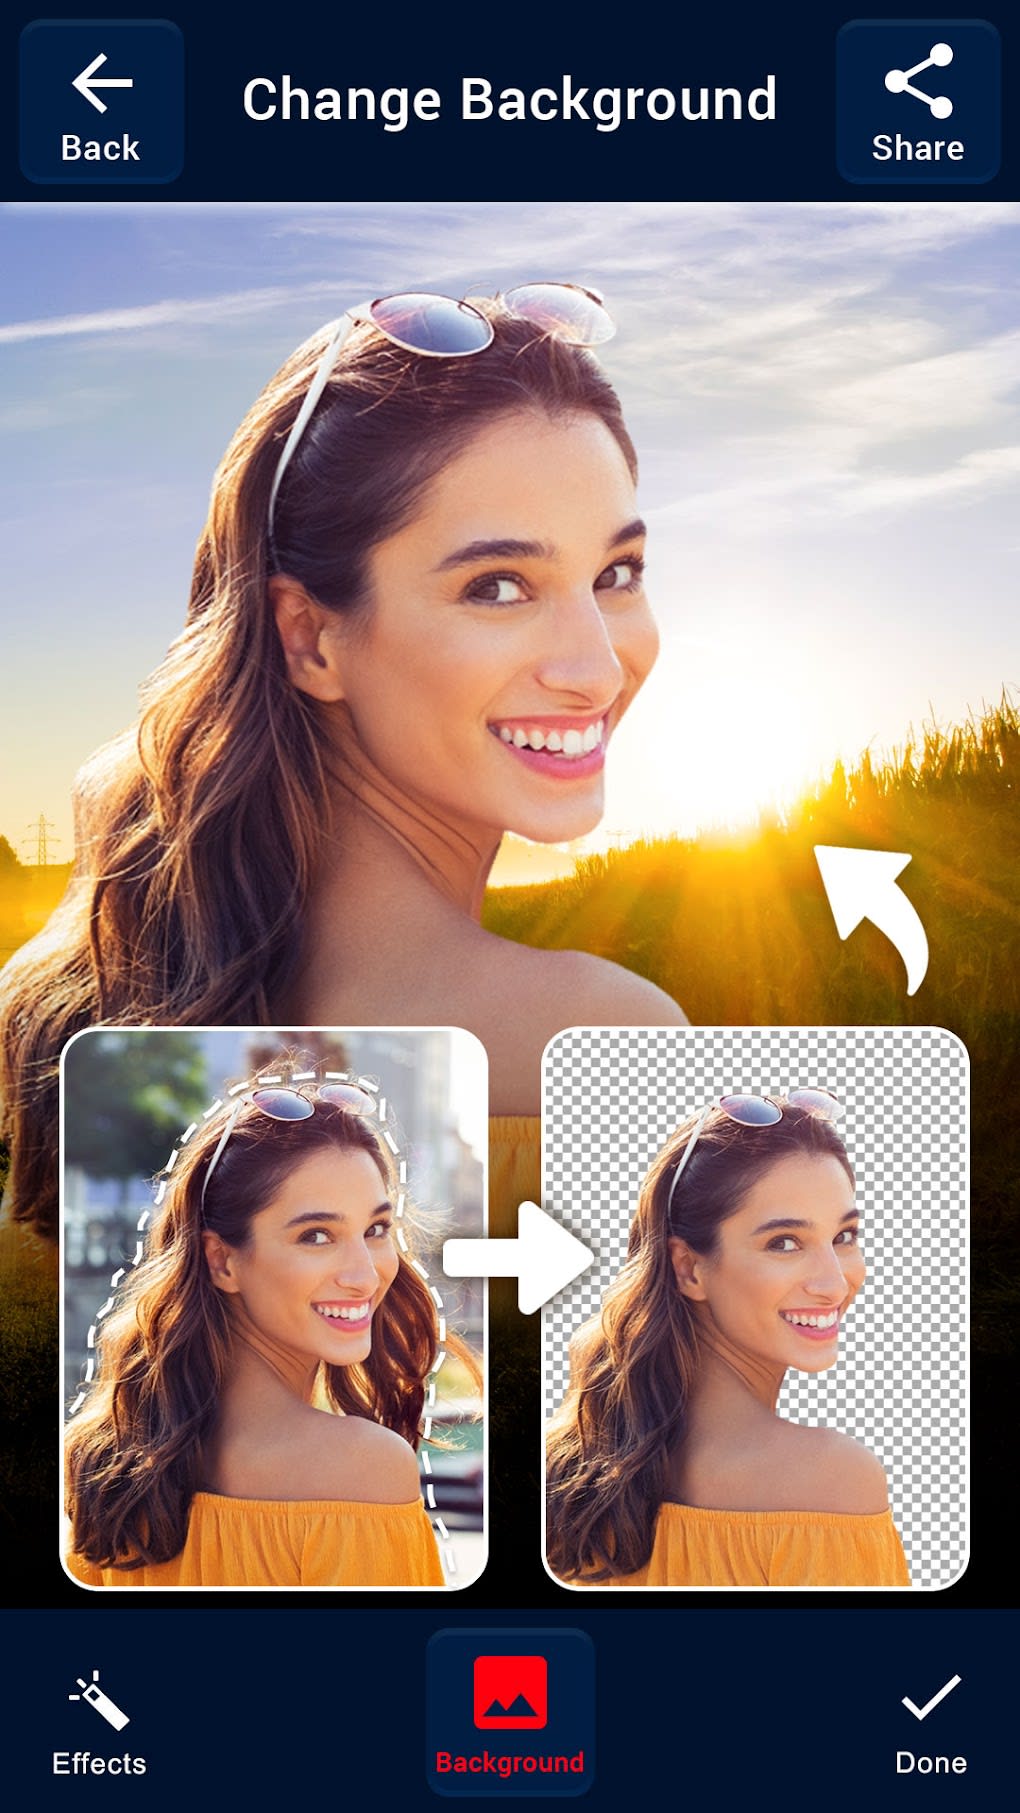 Tải ngay Auto Background Eraser Changer APK cho Android để có trải nghiệm tuyệt vời trong xóa nền ảnh. Với ứng dụng này, bạn có thể dễ dàng tạo ra những bức ảnh chất lượng, không bị ảnh hưởng bởi nền ảnh xấu.